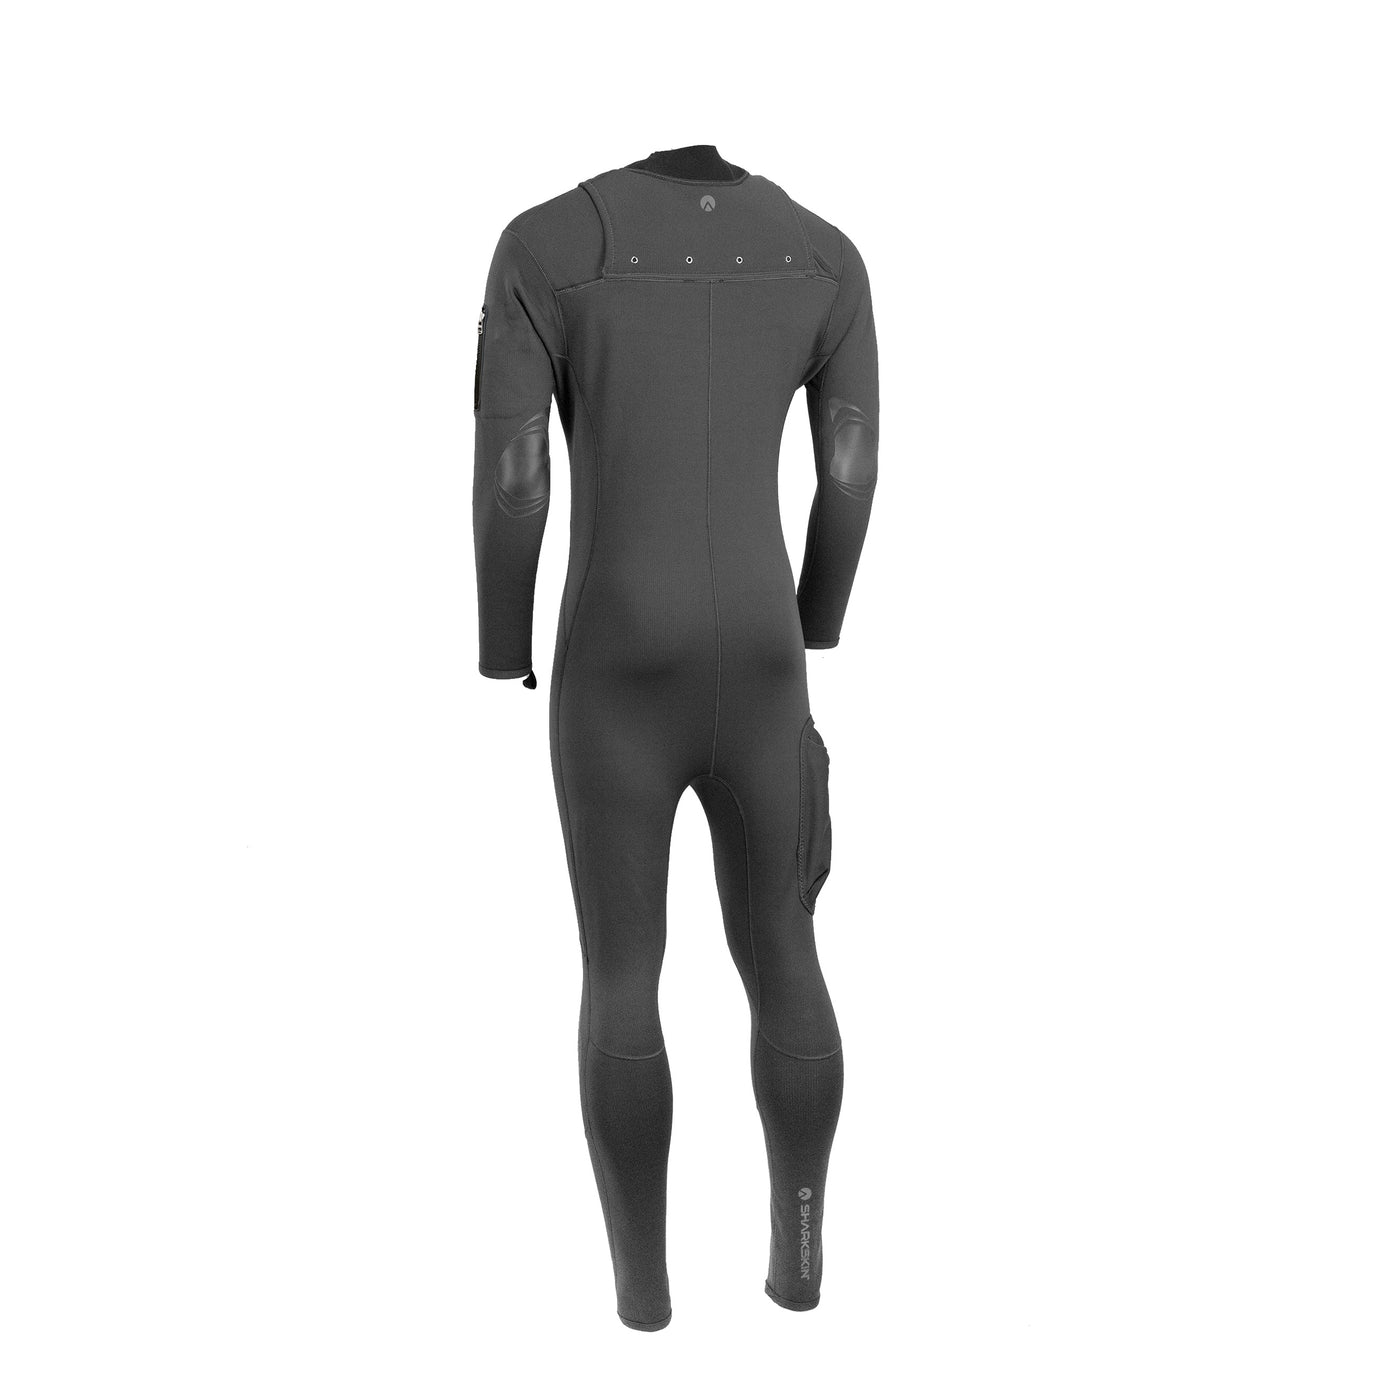 Titanium 2 Multi-Sport Suit (Male)